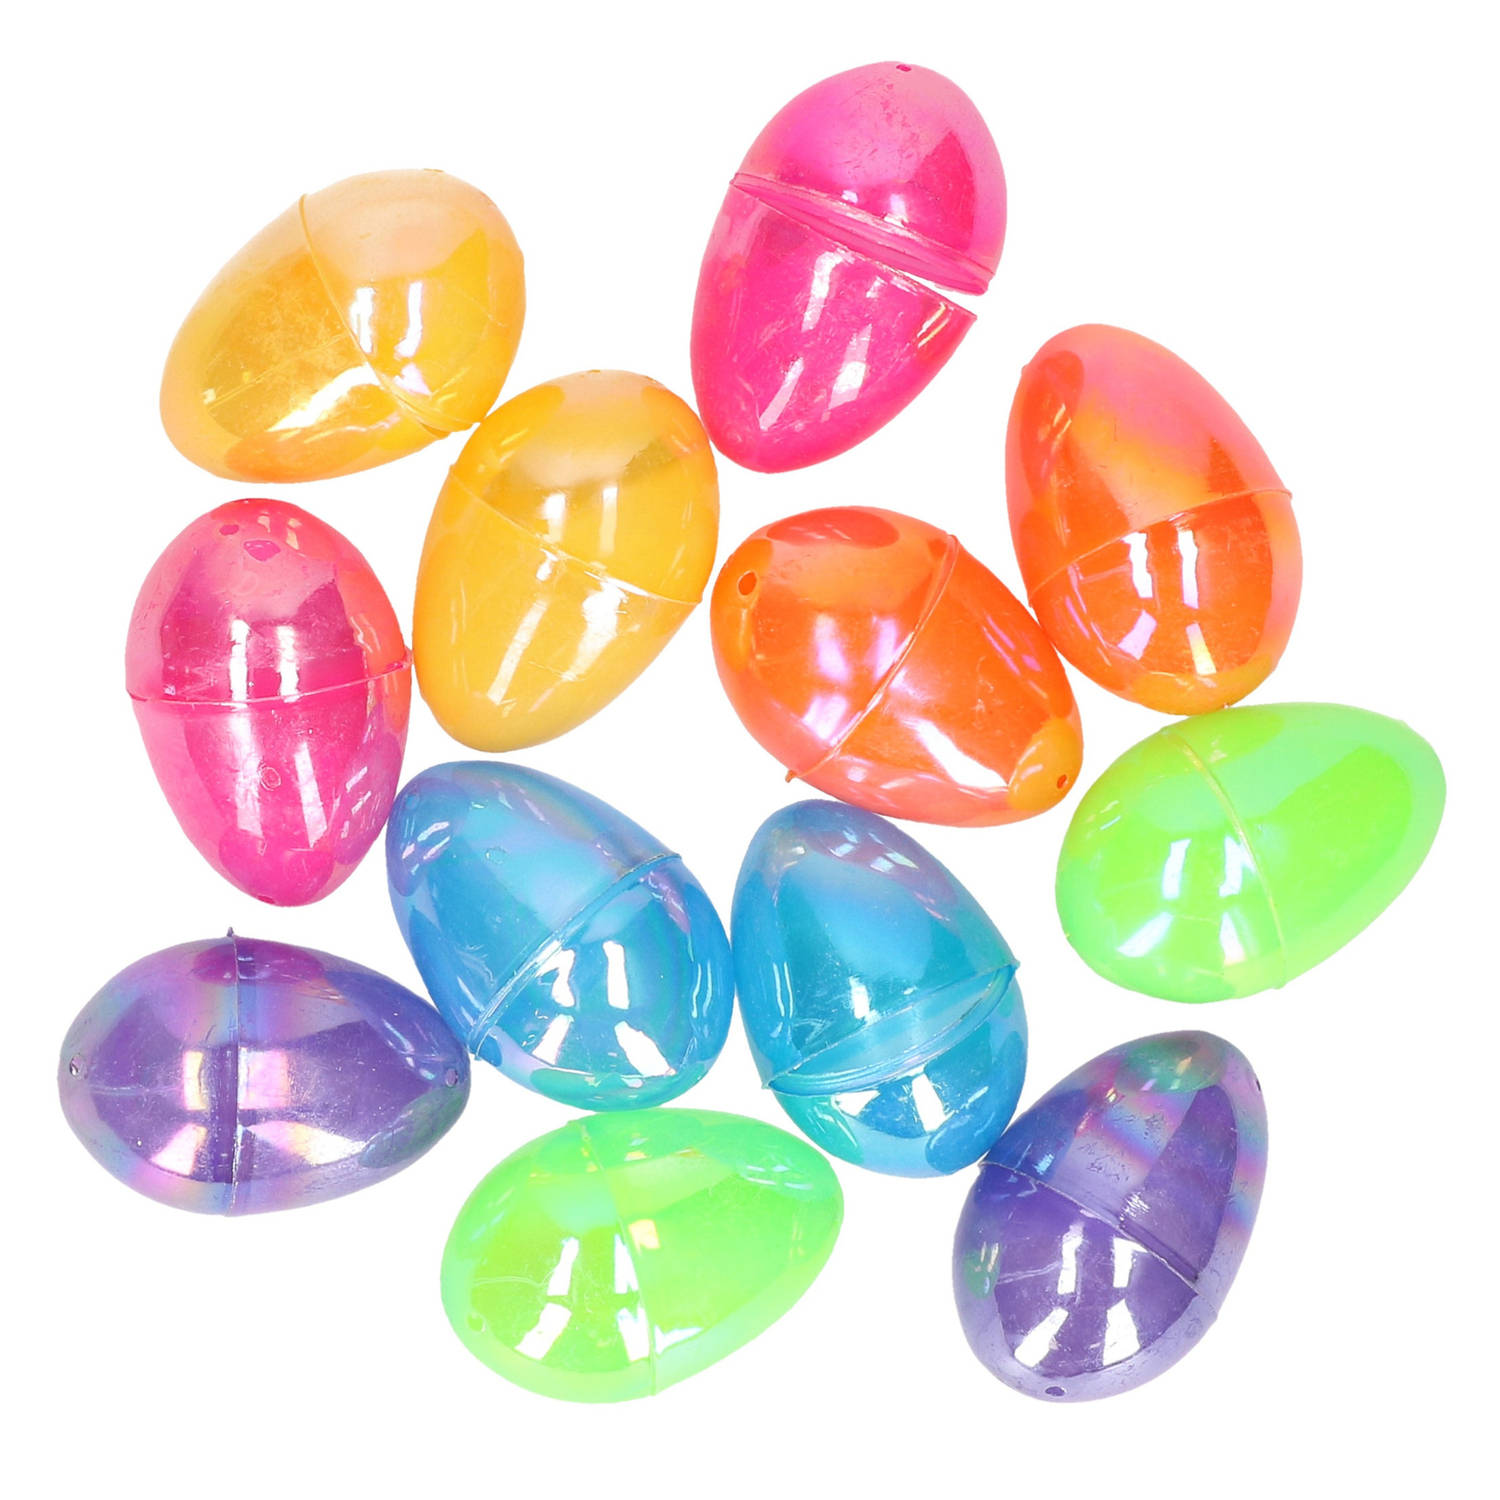 12x Stuks Gekleurde Metallic Eieren-paaseieren 6 Cm Feestdecoratievoorwerp